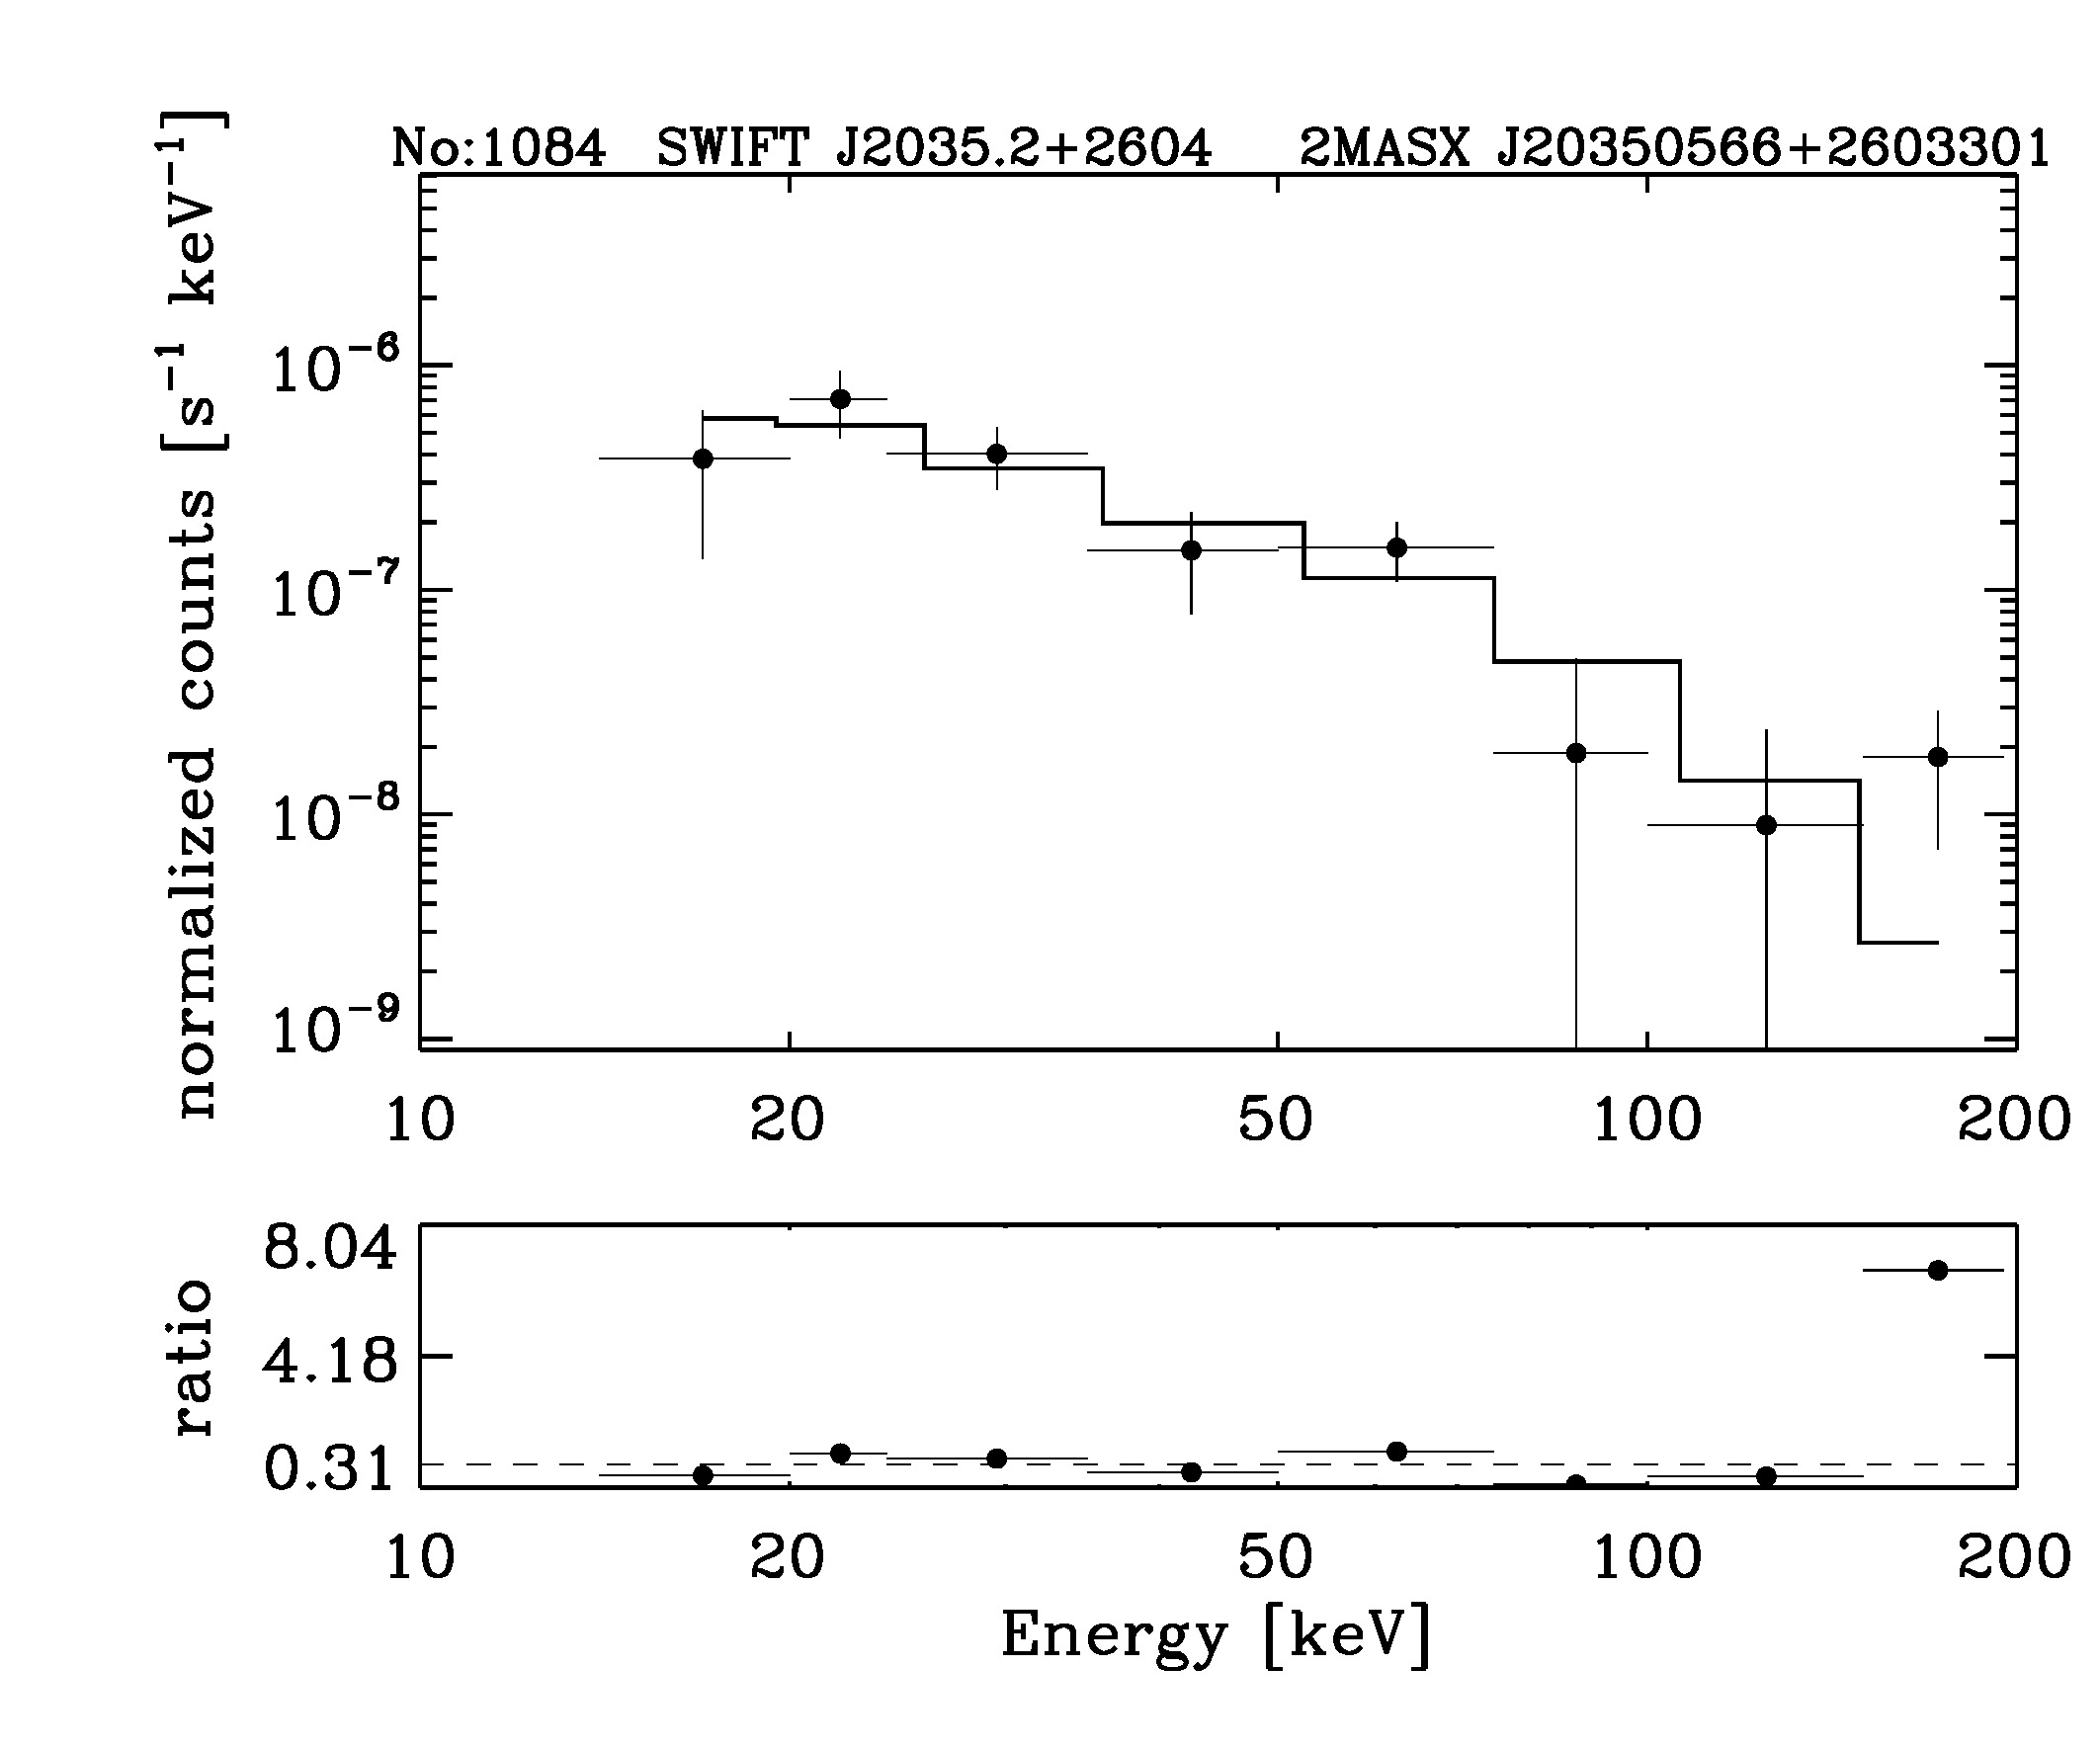 BAT Spectrum for SWIFT J2035.2+2604